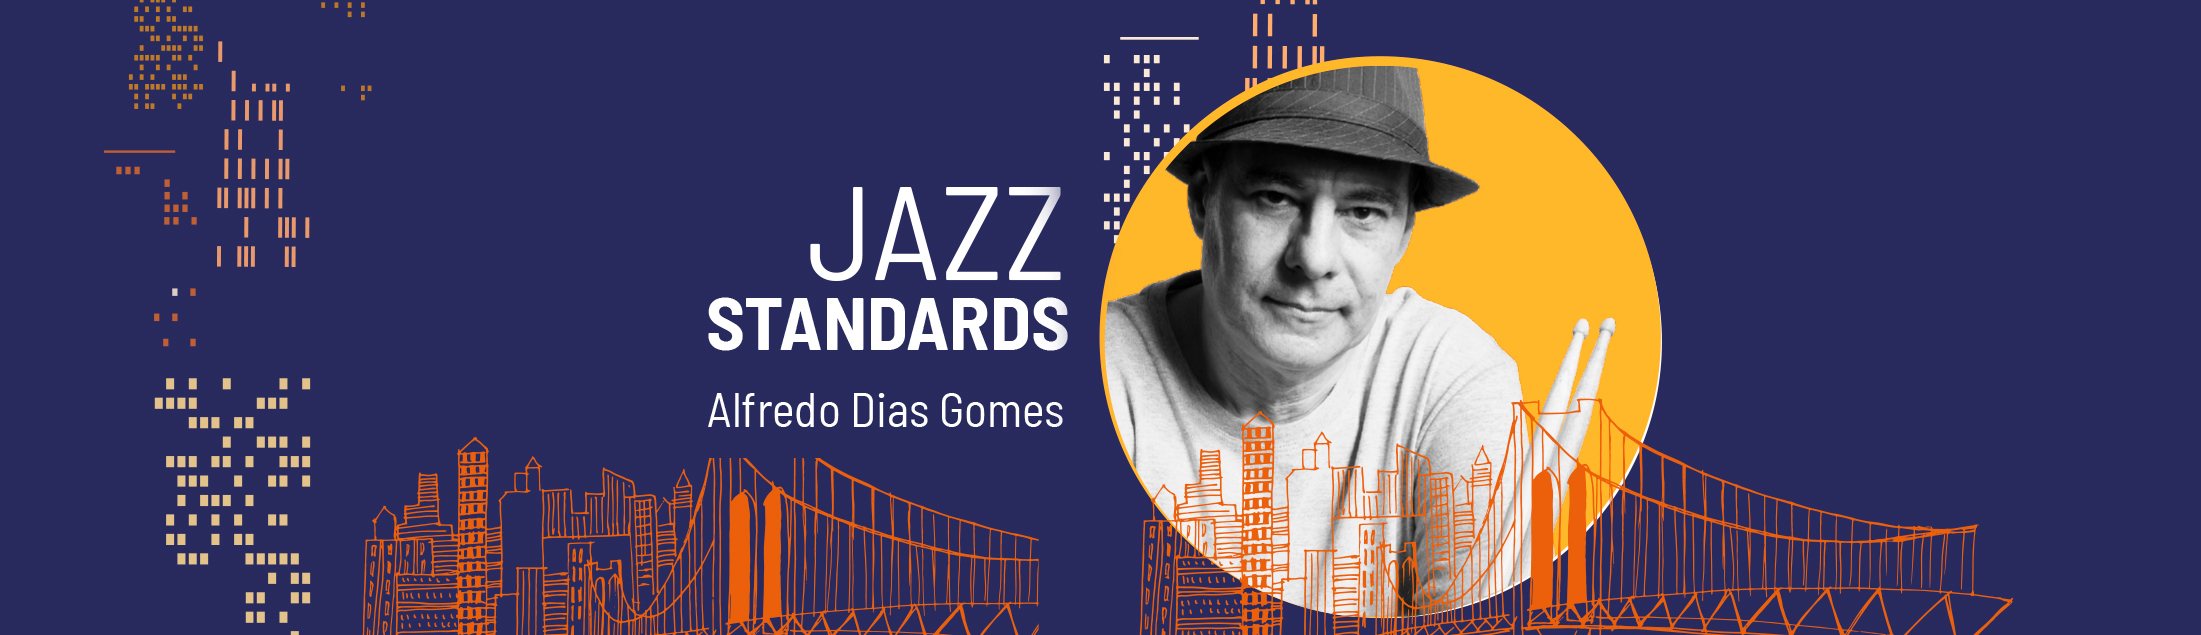 Alfredo Dias Gomes lança seu primeiro disco totalmente dedicado ao jazz